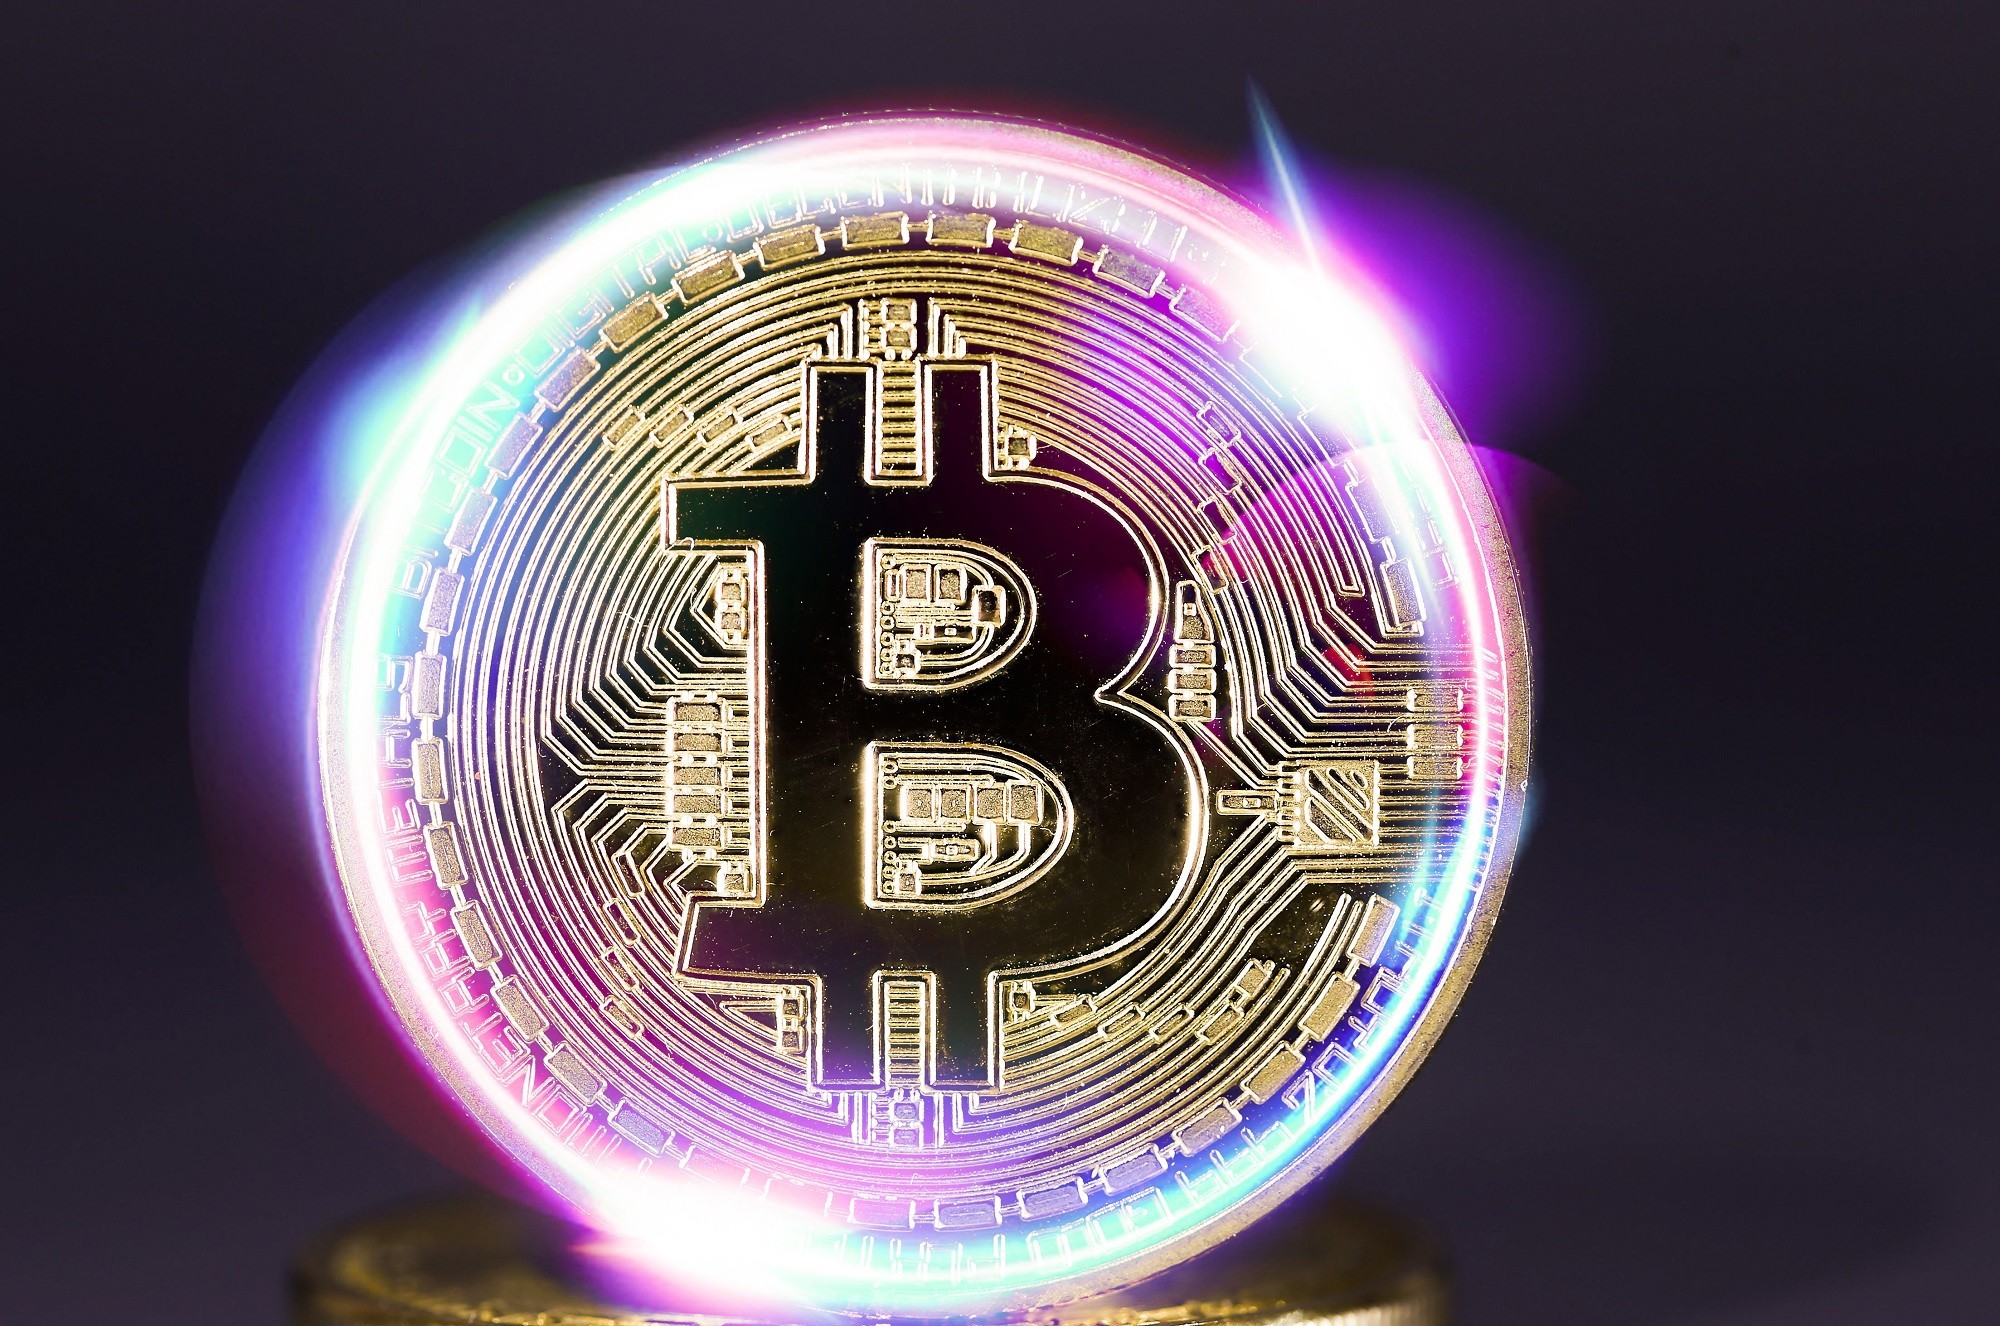 Bitcoin boulder could bitcoin crash the economy